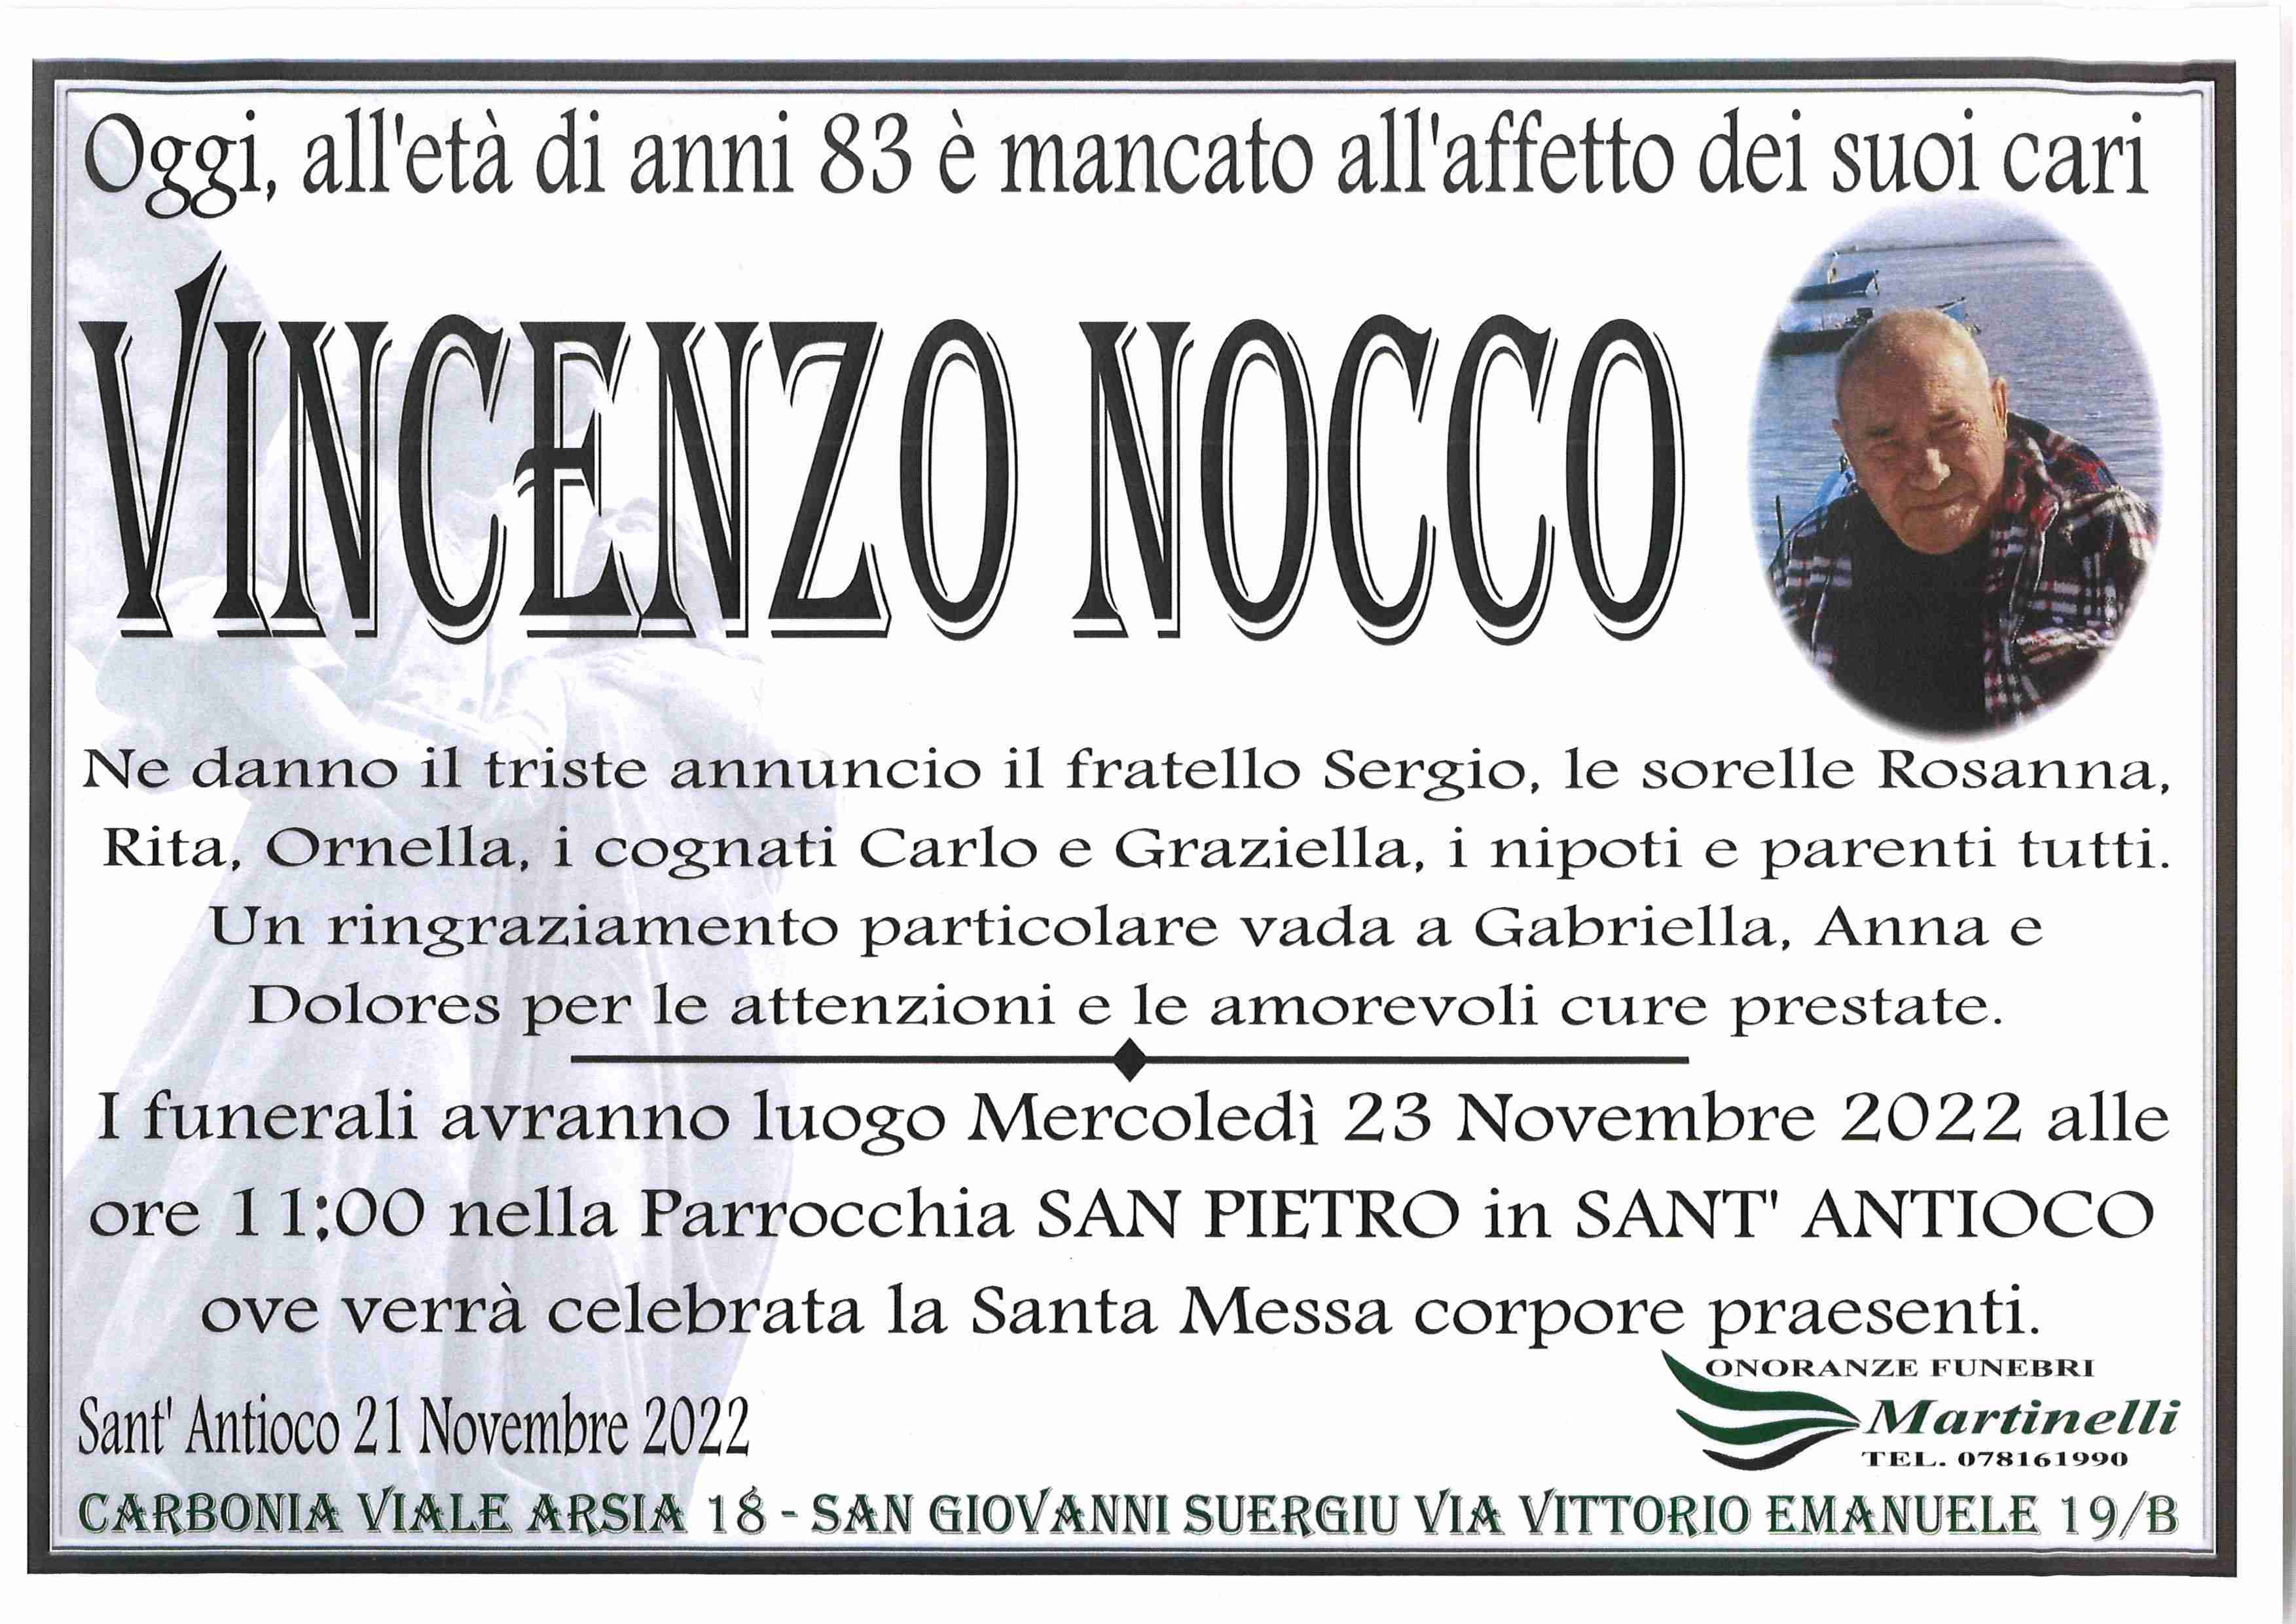 Vincenzo Nocco